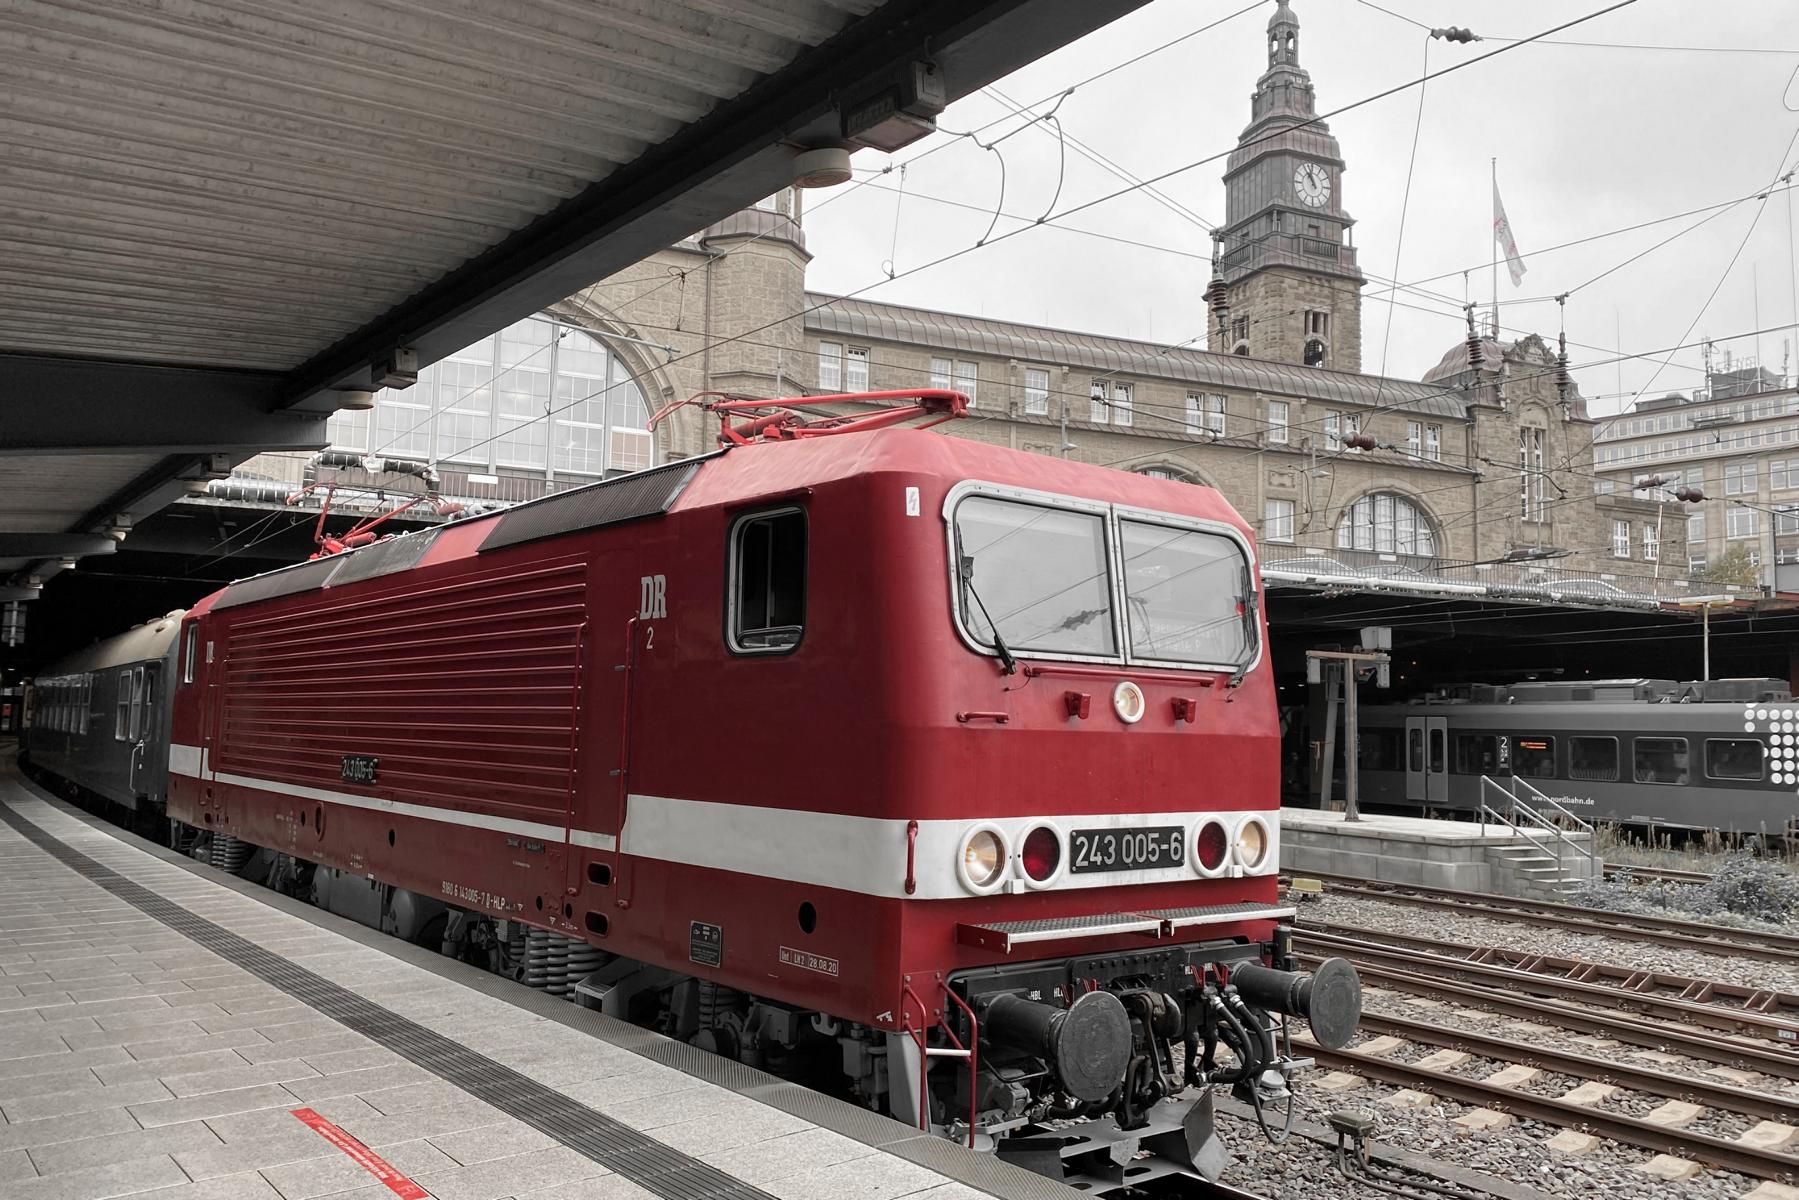 ©Foto: Christian Wodzinski | railmen | „Bezzy“ aka Funkmesswagen zu Besuch in Hamburg